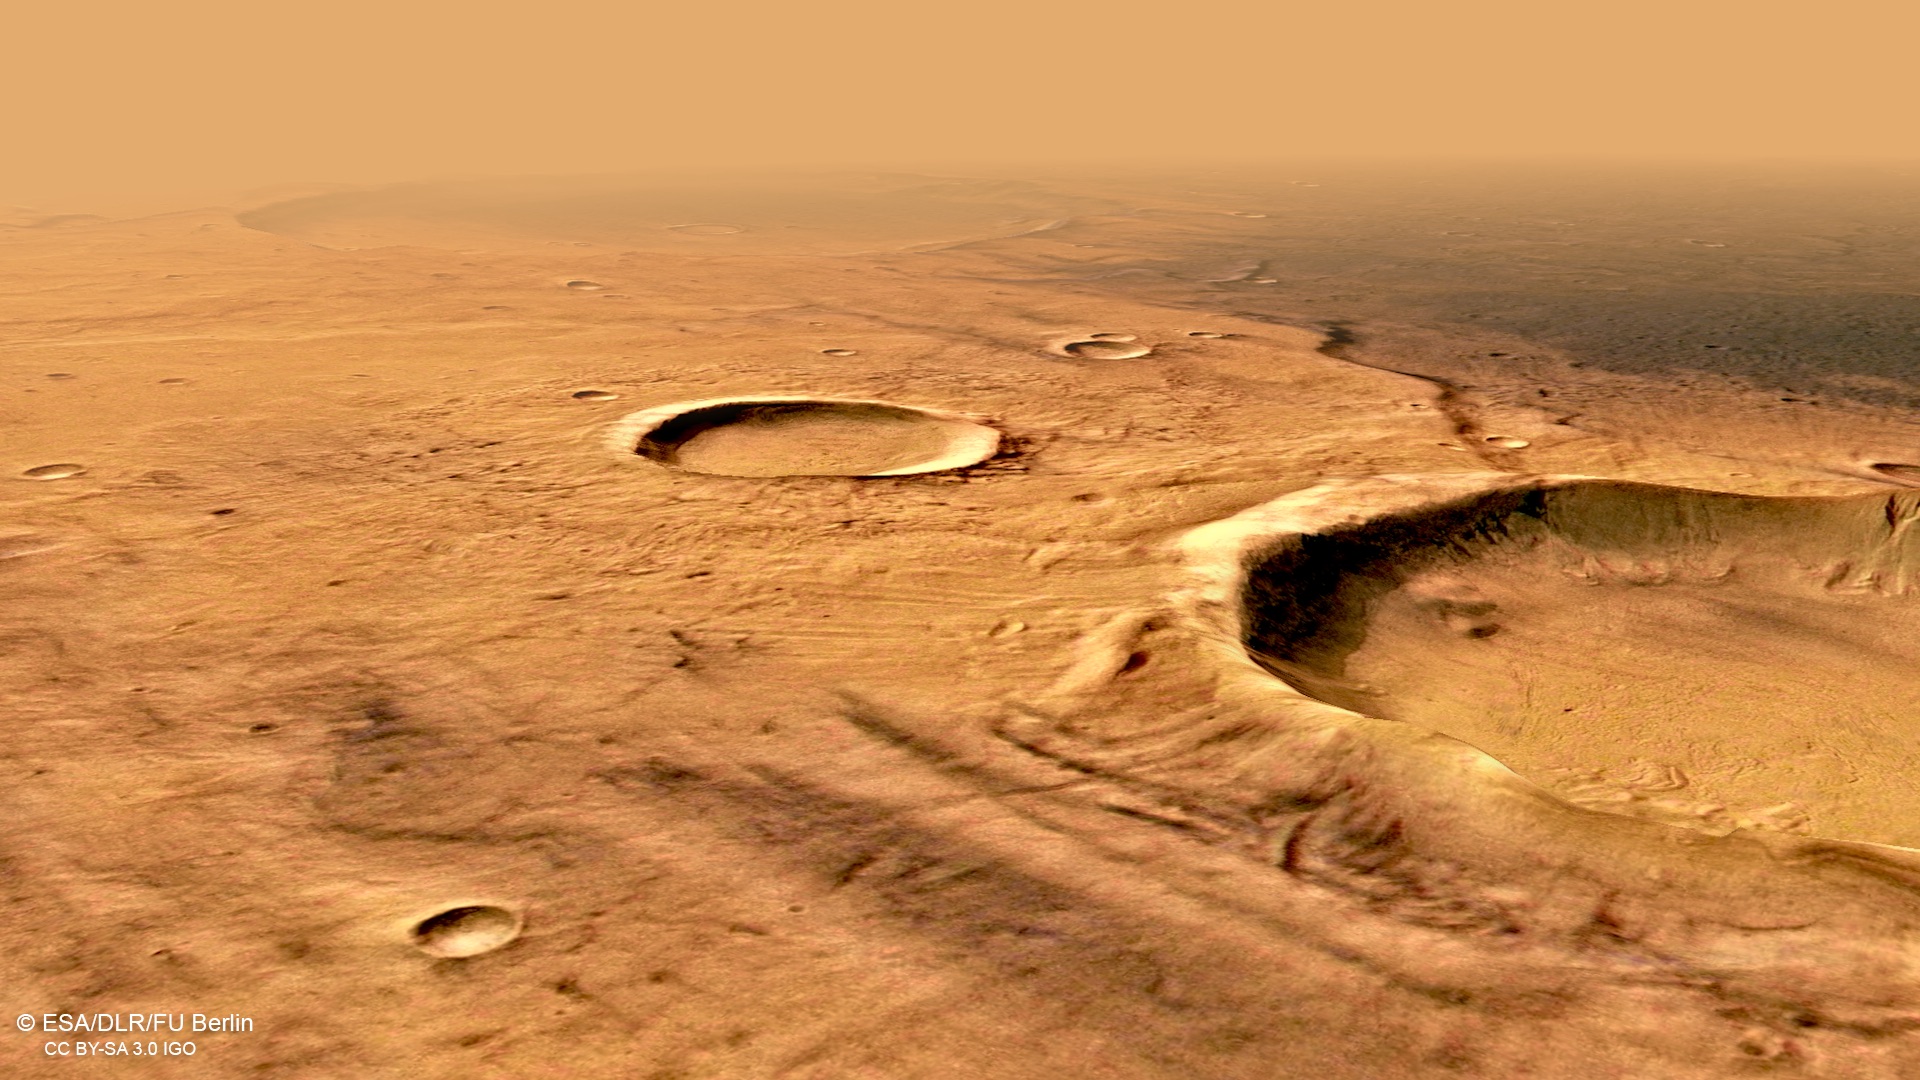 Planet Mars. Neue UNGLAUBLICHE Bilder haben die ganze Menschheit in Erstaunen versetzt. Terra Cimmeria Foto